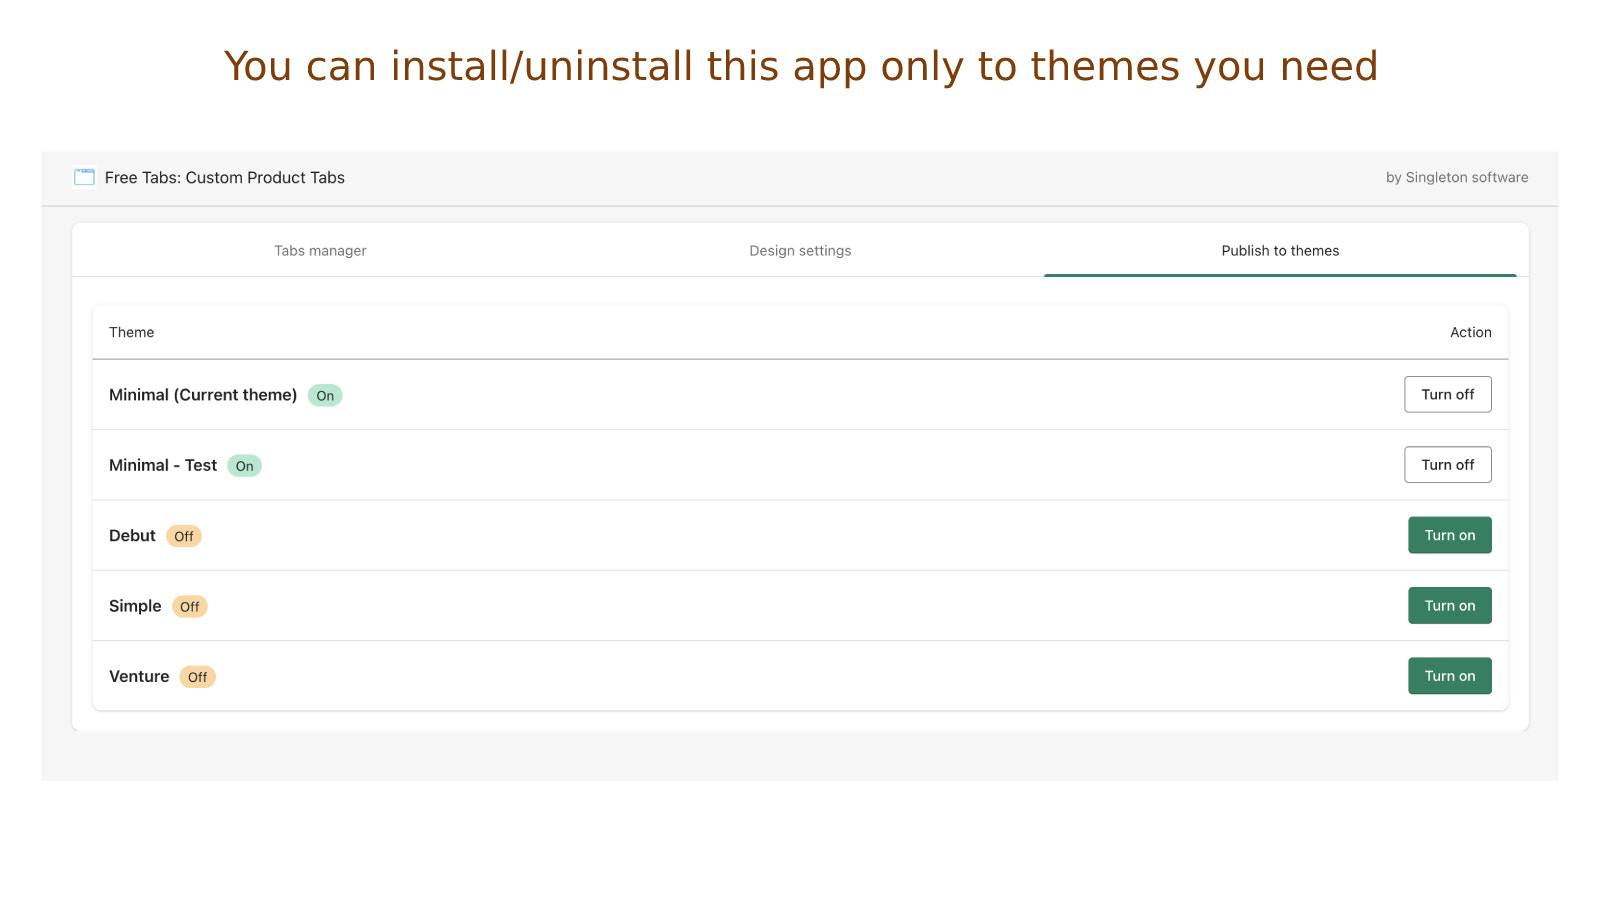 Du kan installere/afinstallere app kun til de temaer, du har brug for